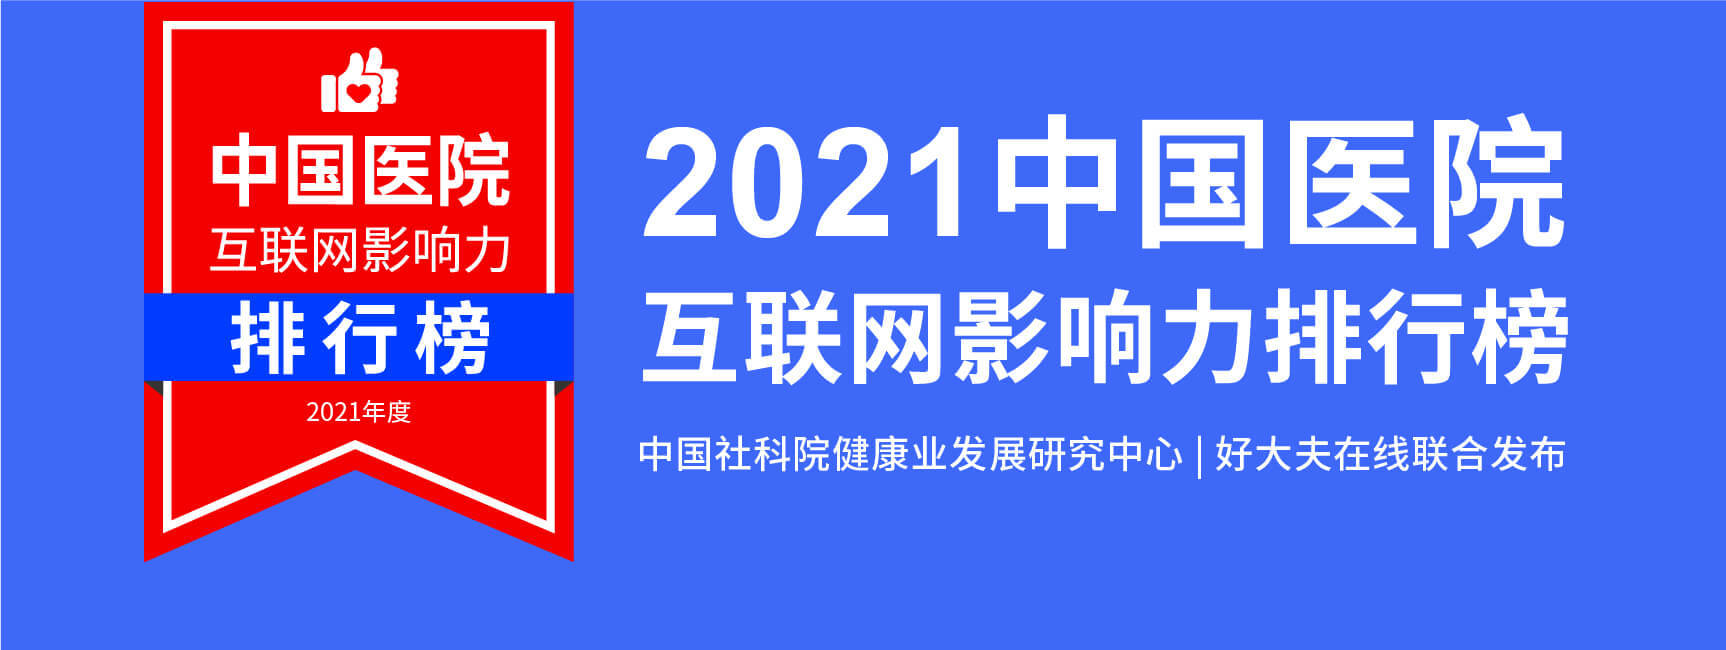 河南肝病医院排行榜_河南这三家医院登上2021中国医院互联网影响力排行榜